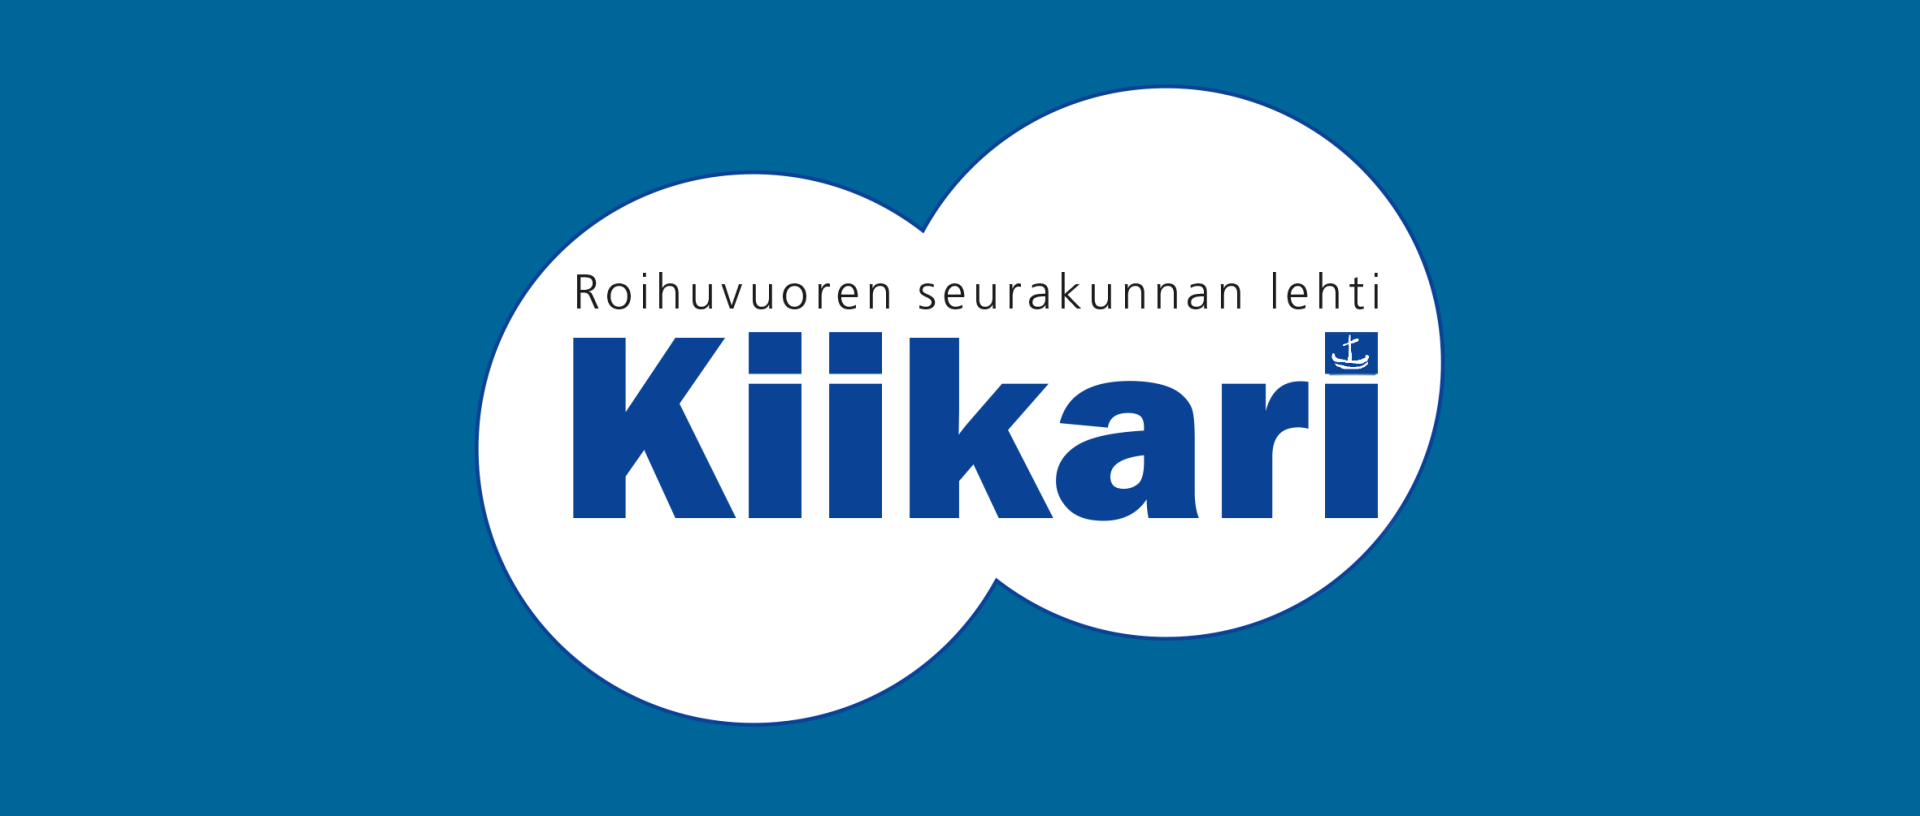 Kiikari-lehden logo sinisella taustalla